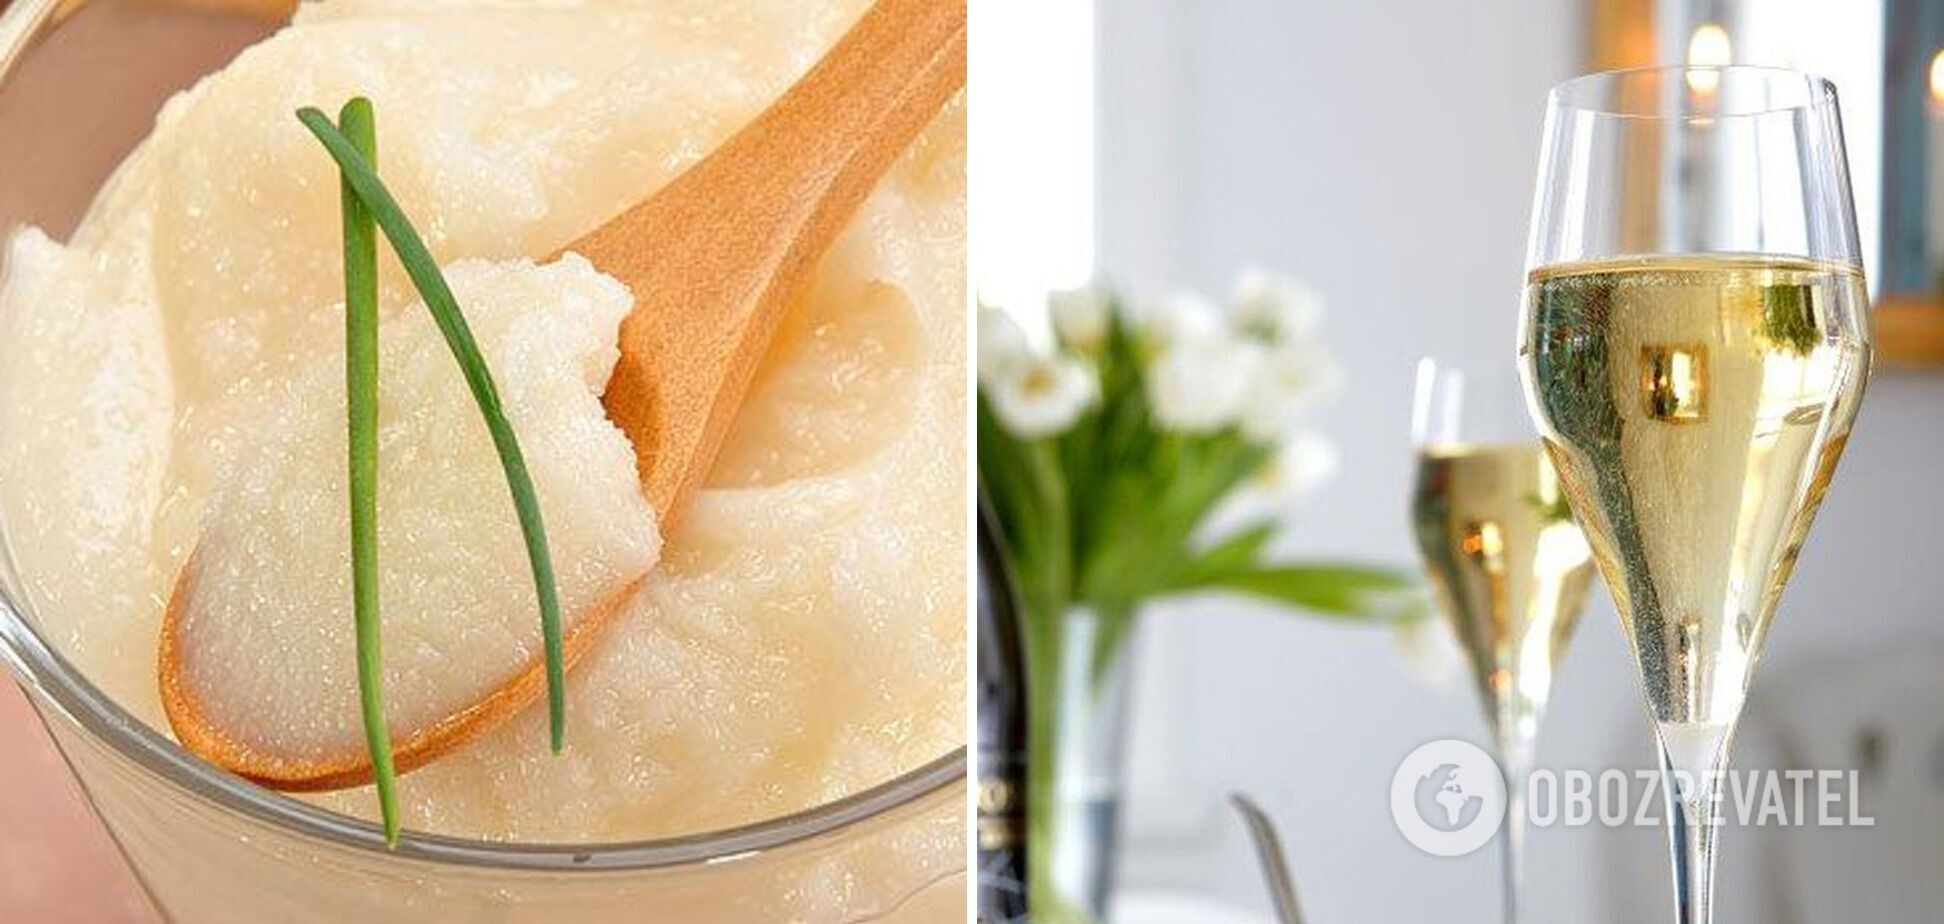 Інгредієнти для приготування найдорожчої картоплі світу – шампанське та гусячий жир